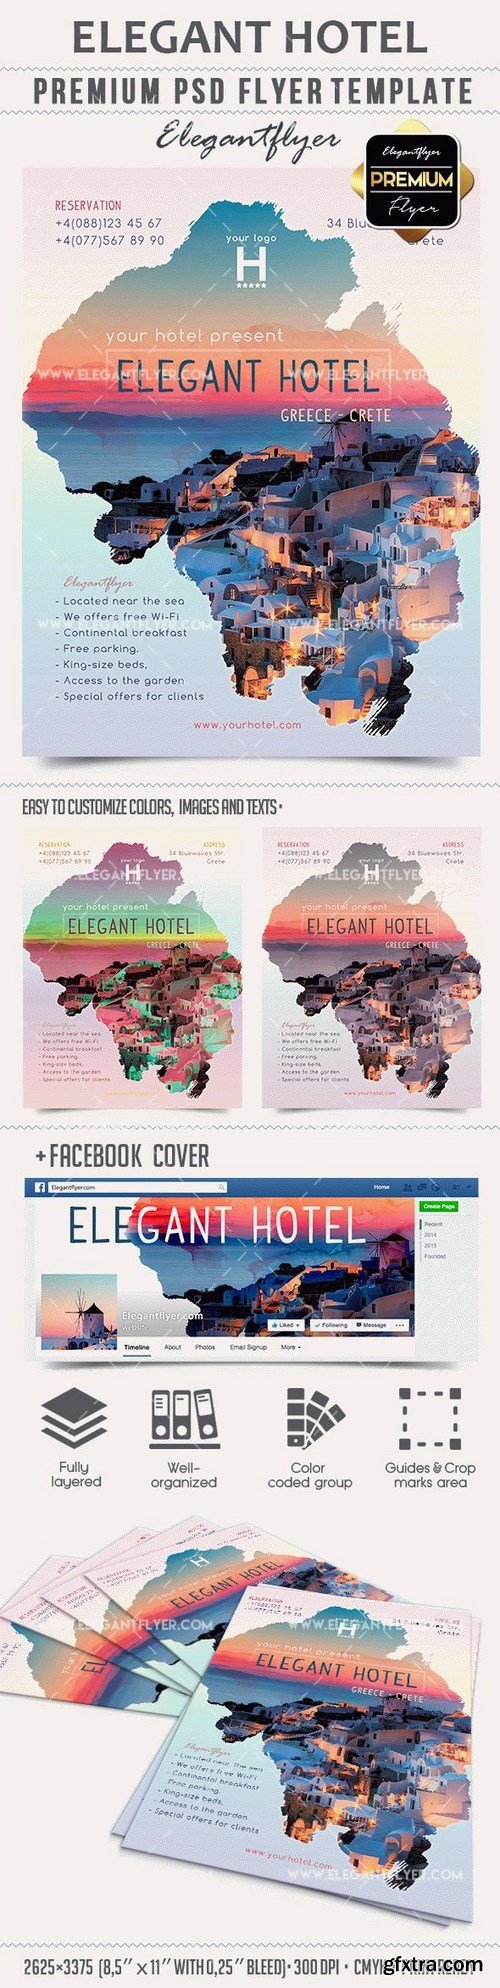 Elegant Hotel – Premium PSD Template + Facebook cover